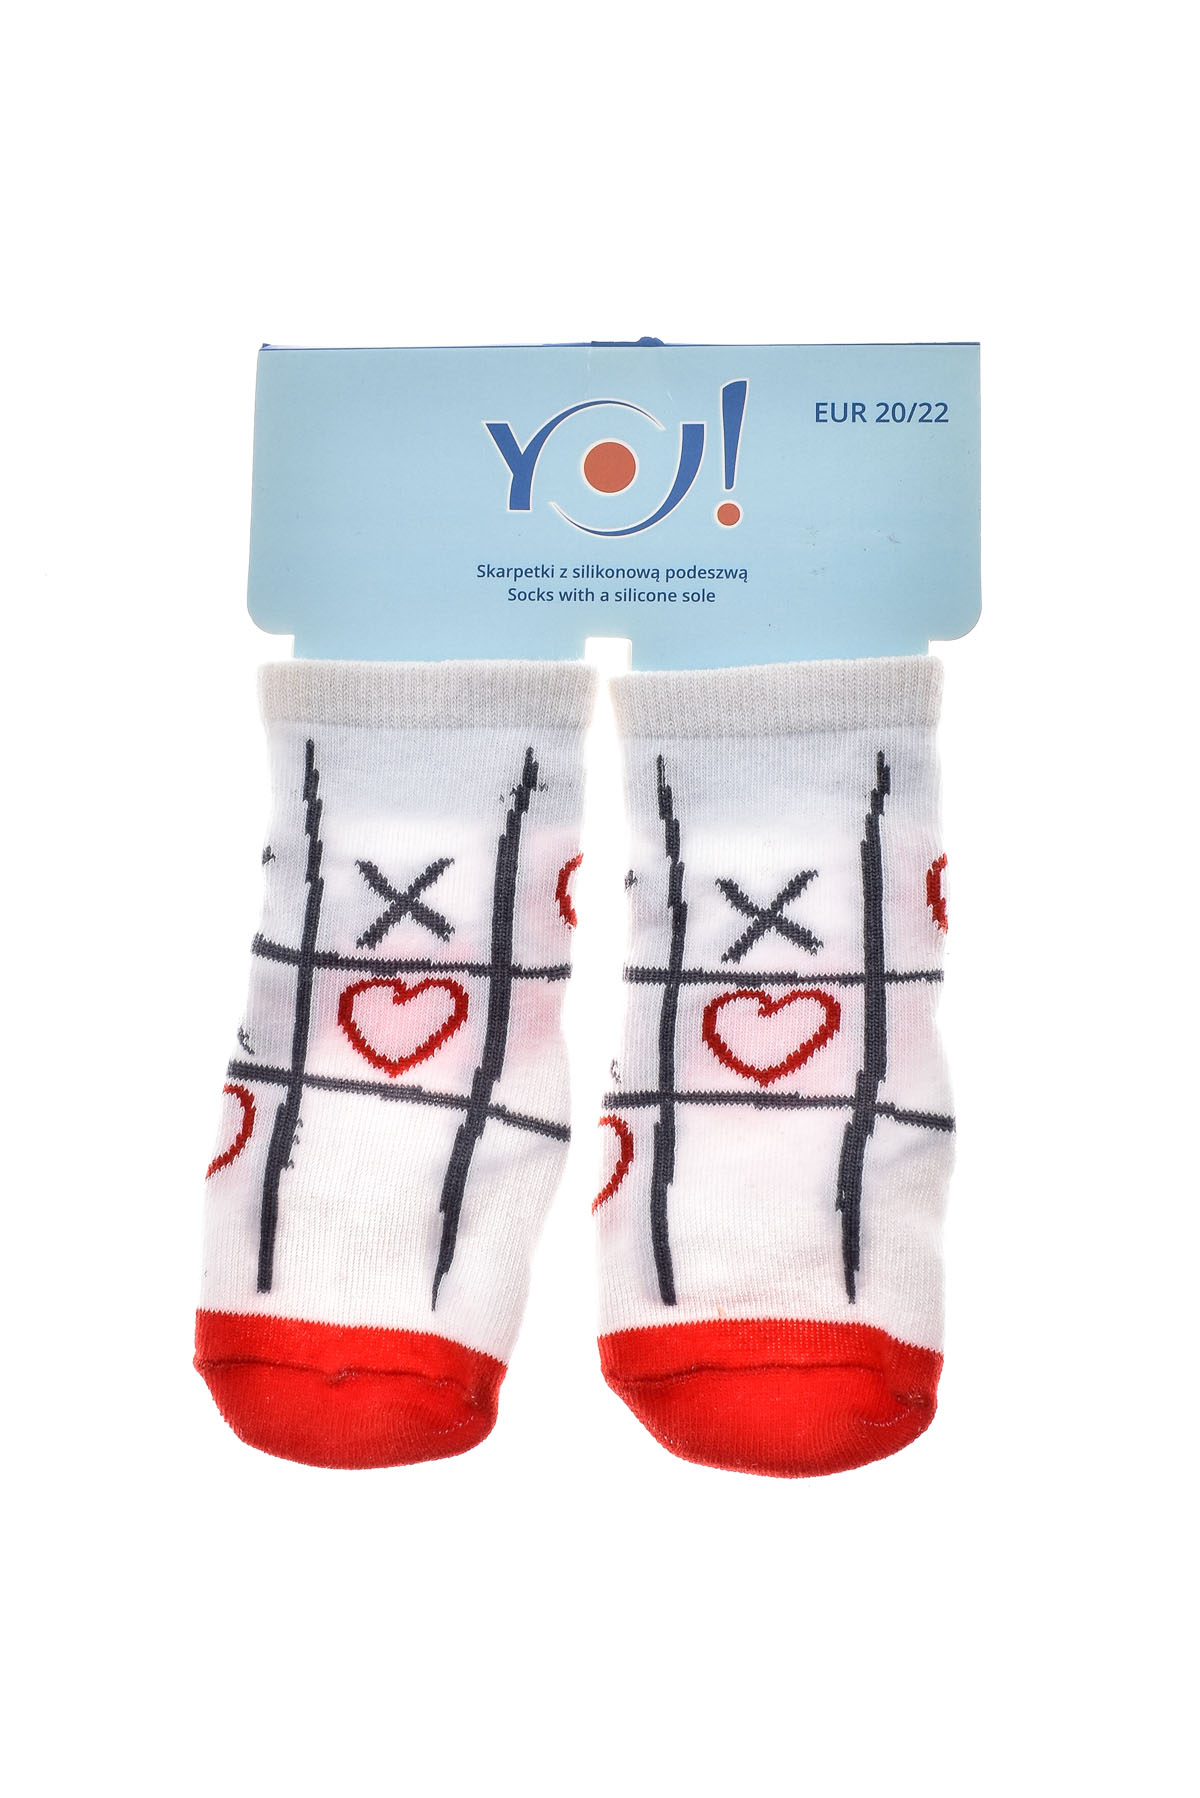 Βρεφικές κάλτσες - Yo! club - 1